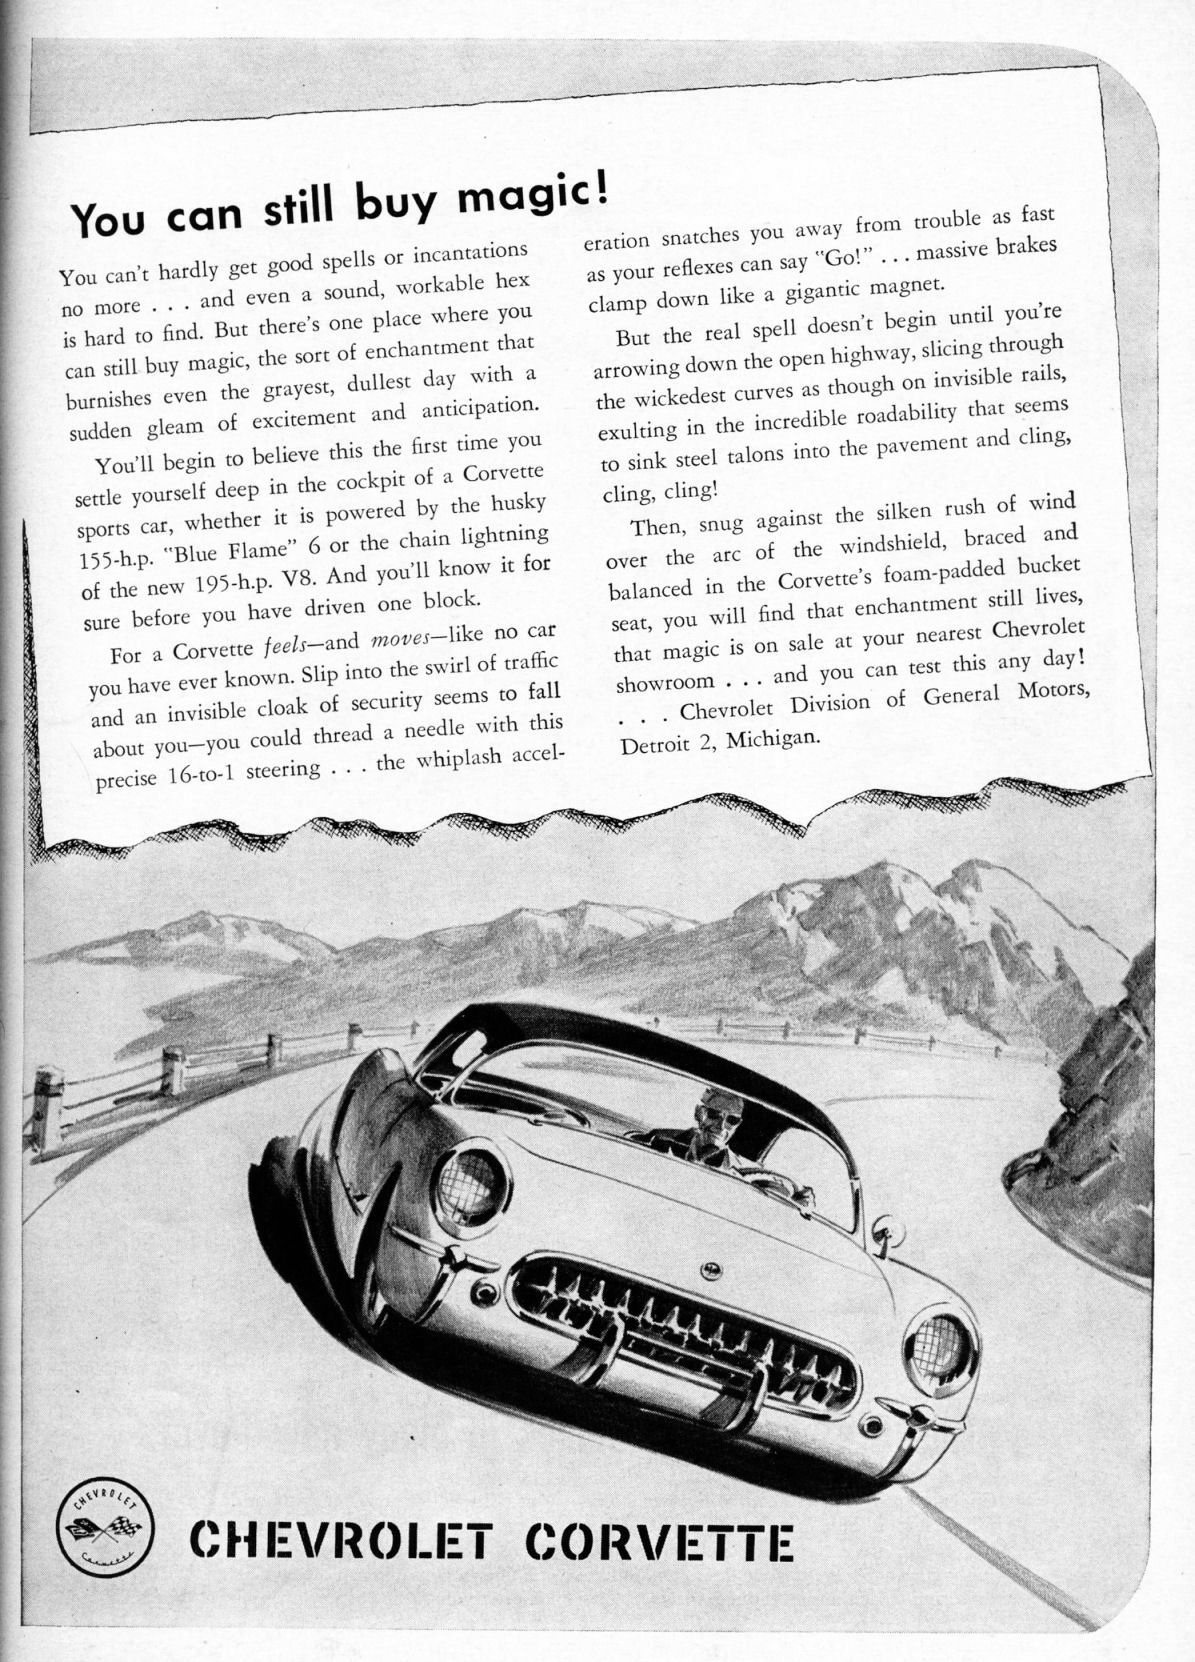 1955 Chevrolet Corvette Advertising